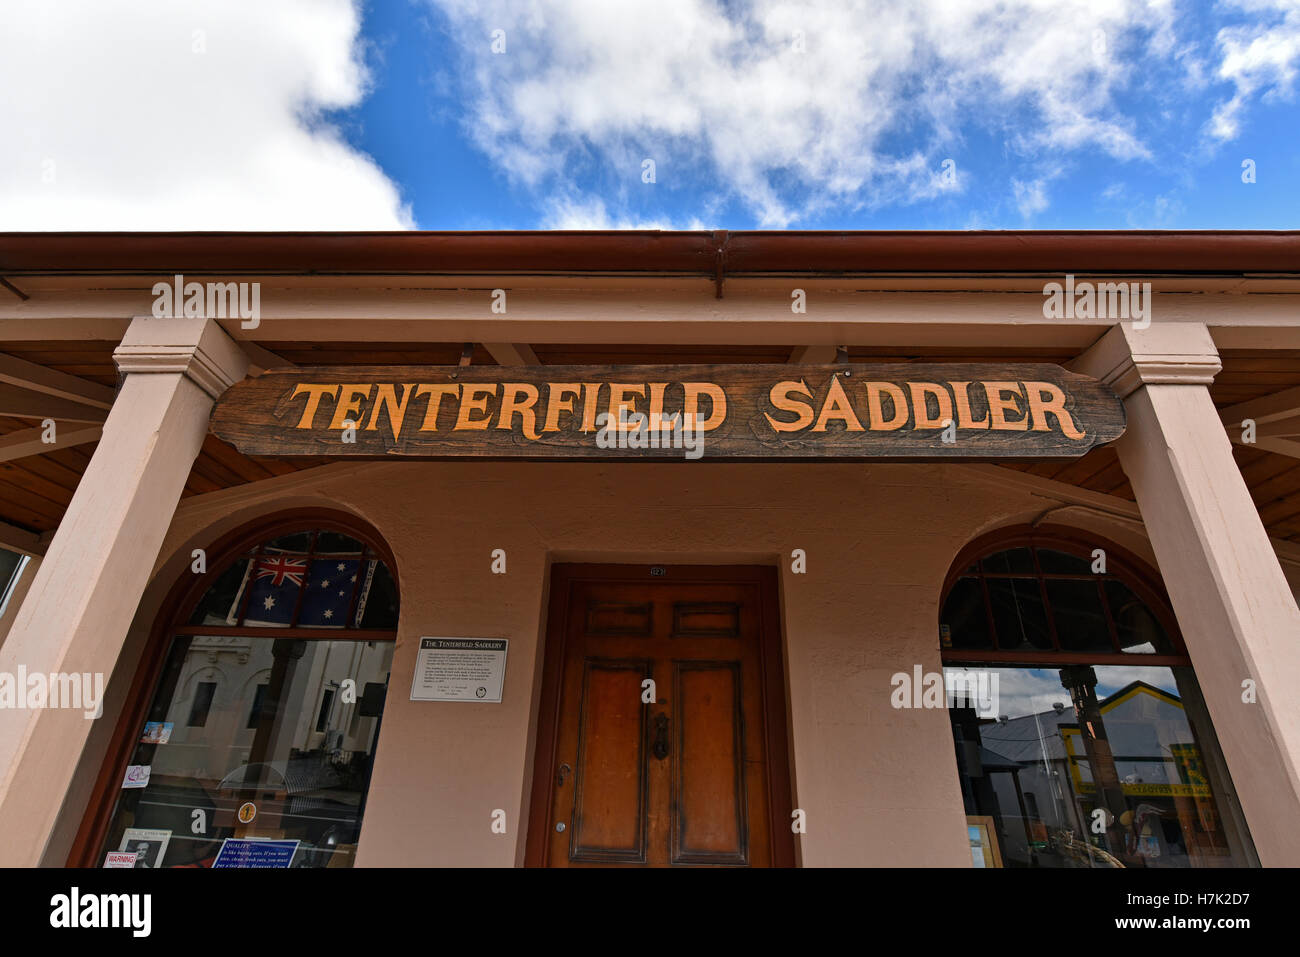 La sellerie tenterfield bâtir l'inspiration pour la chanson peter allen ' l ' tenterfield saddler Banque D'Images